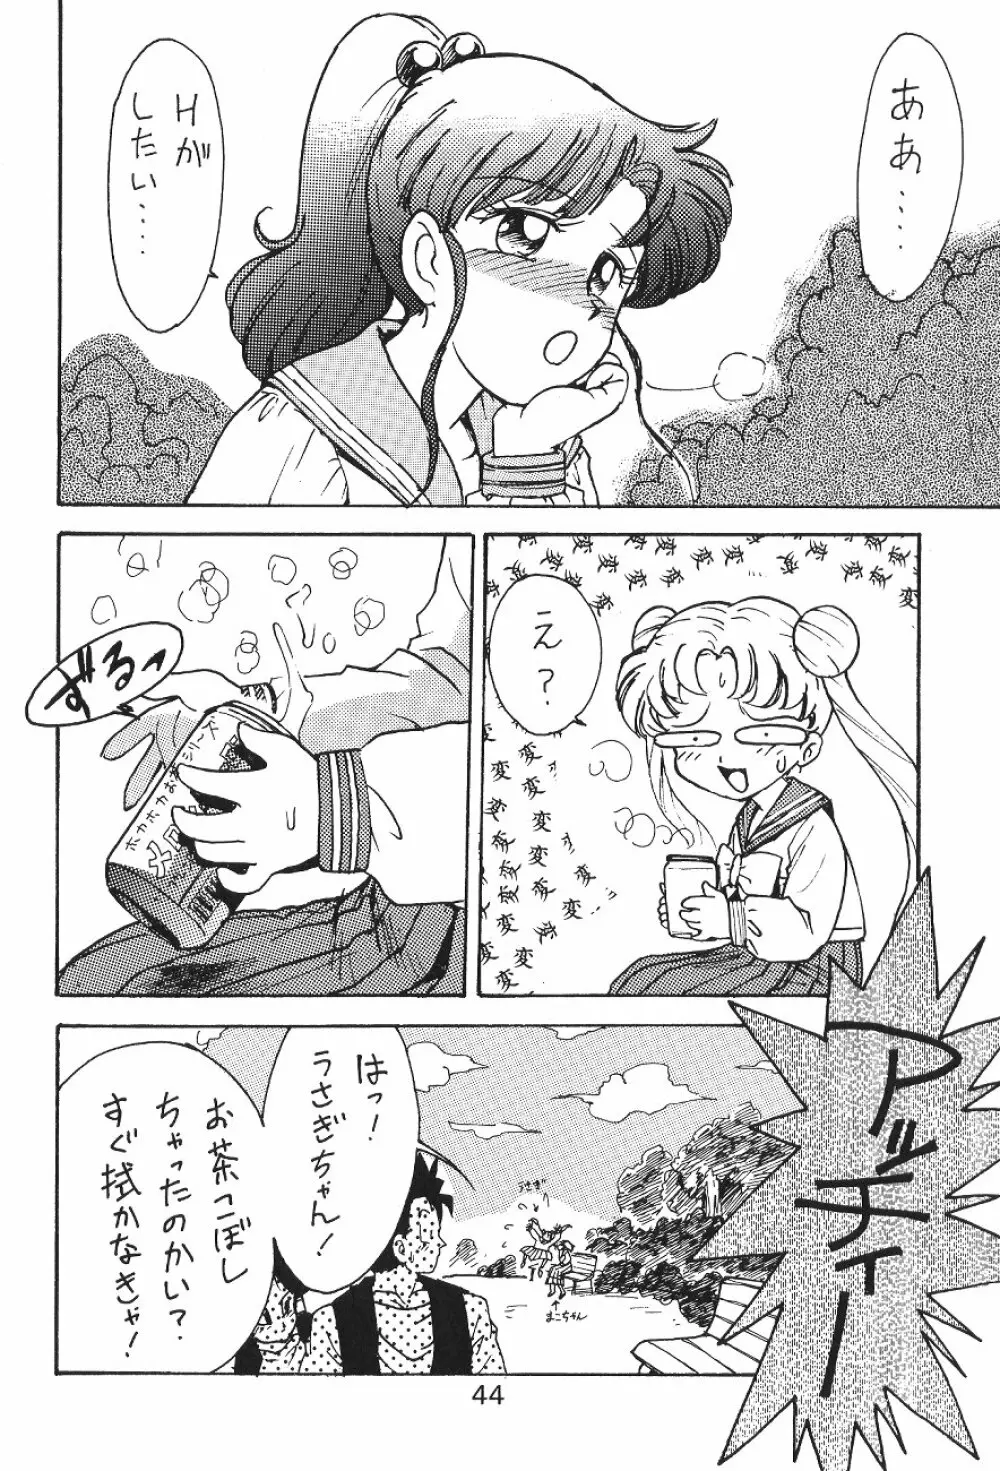 KATZE 7 上巻 - page44